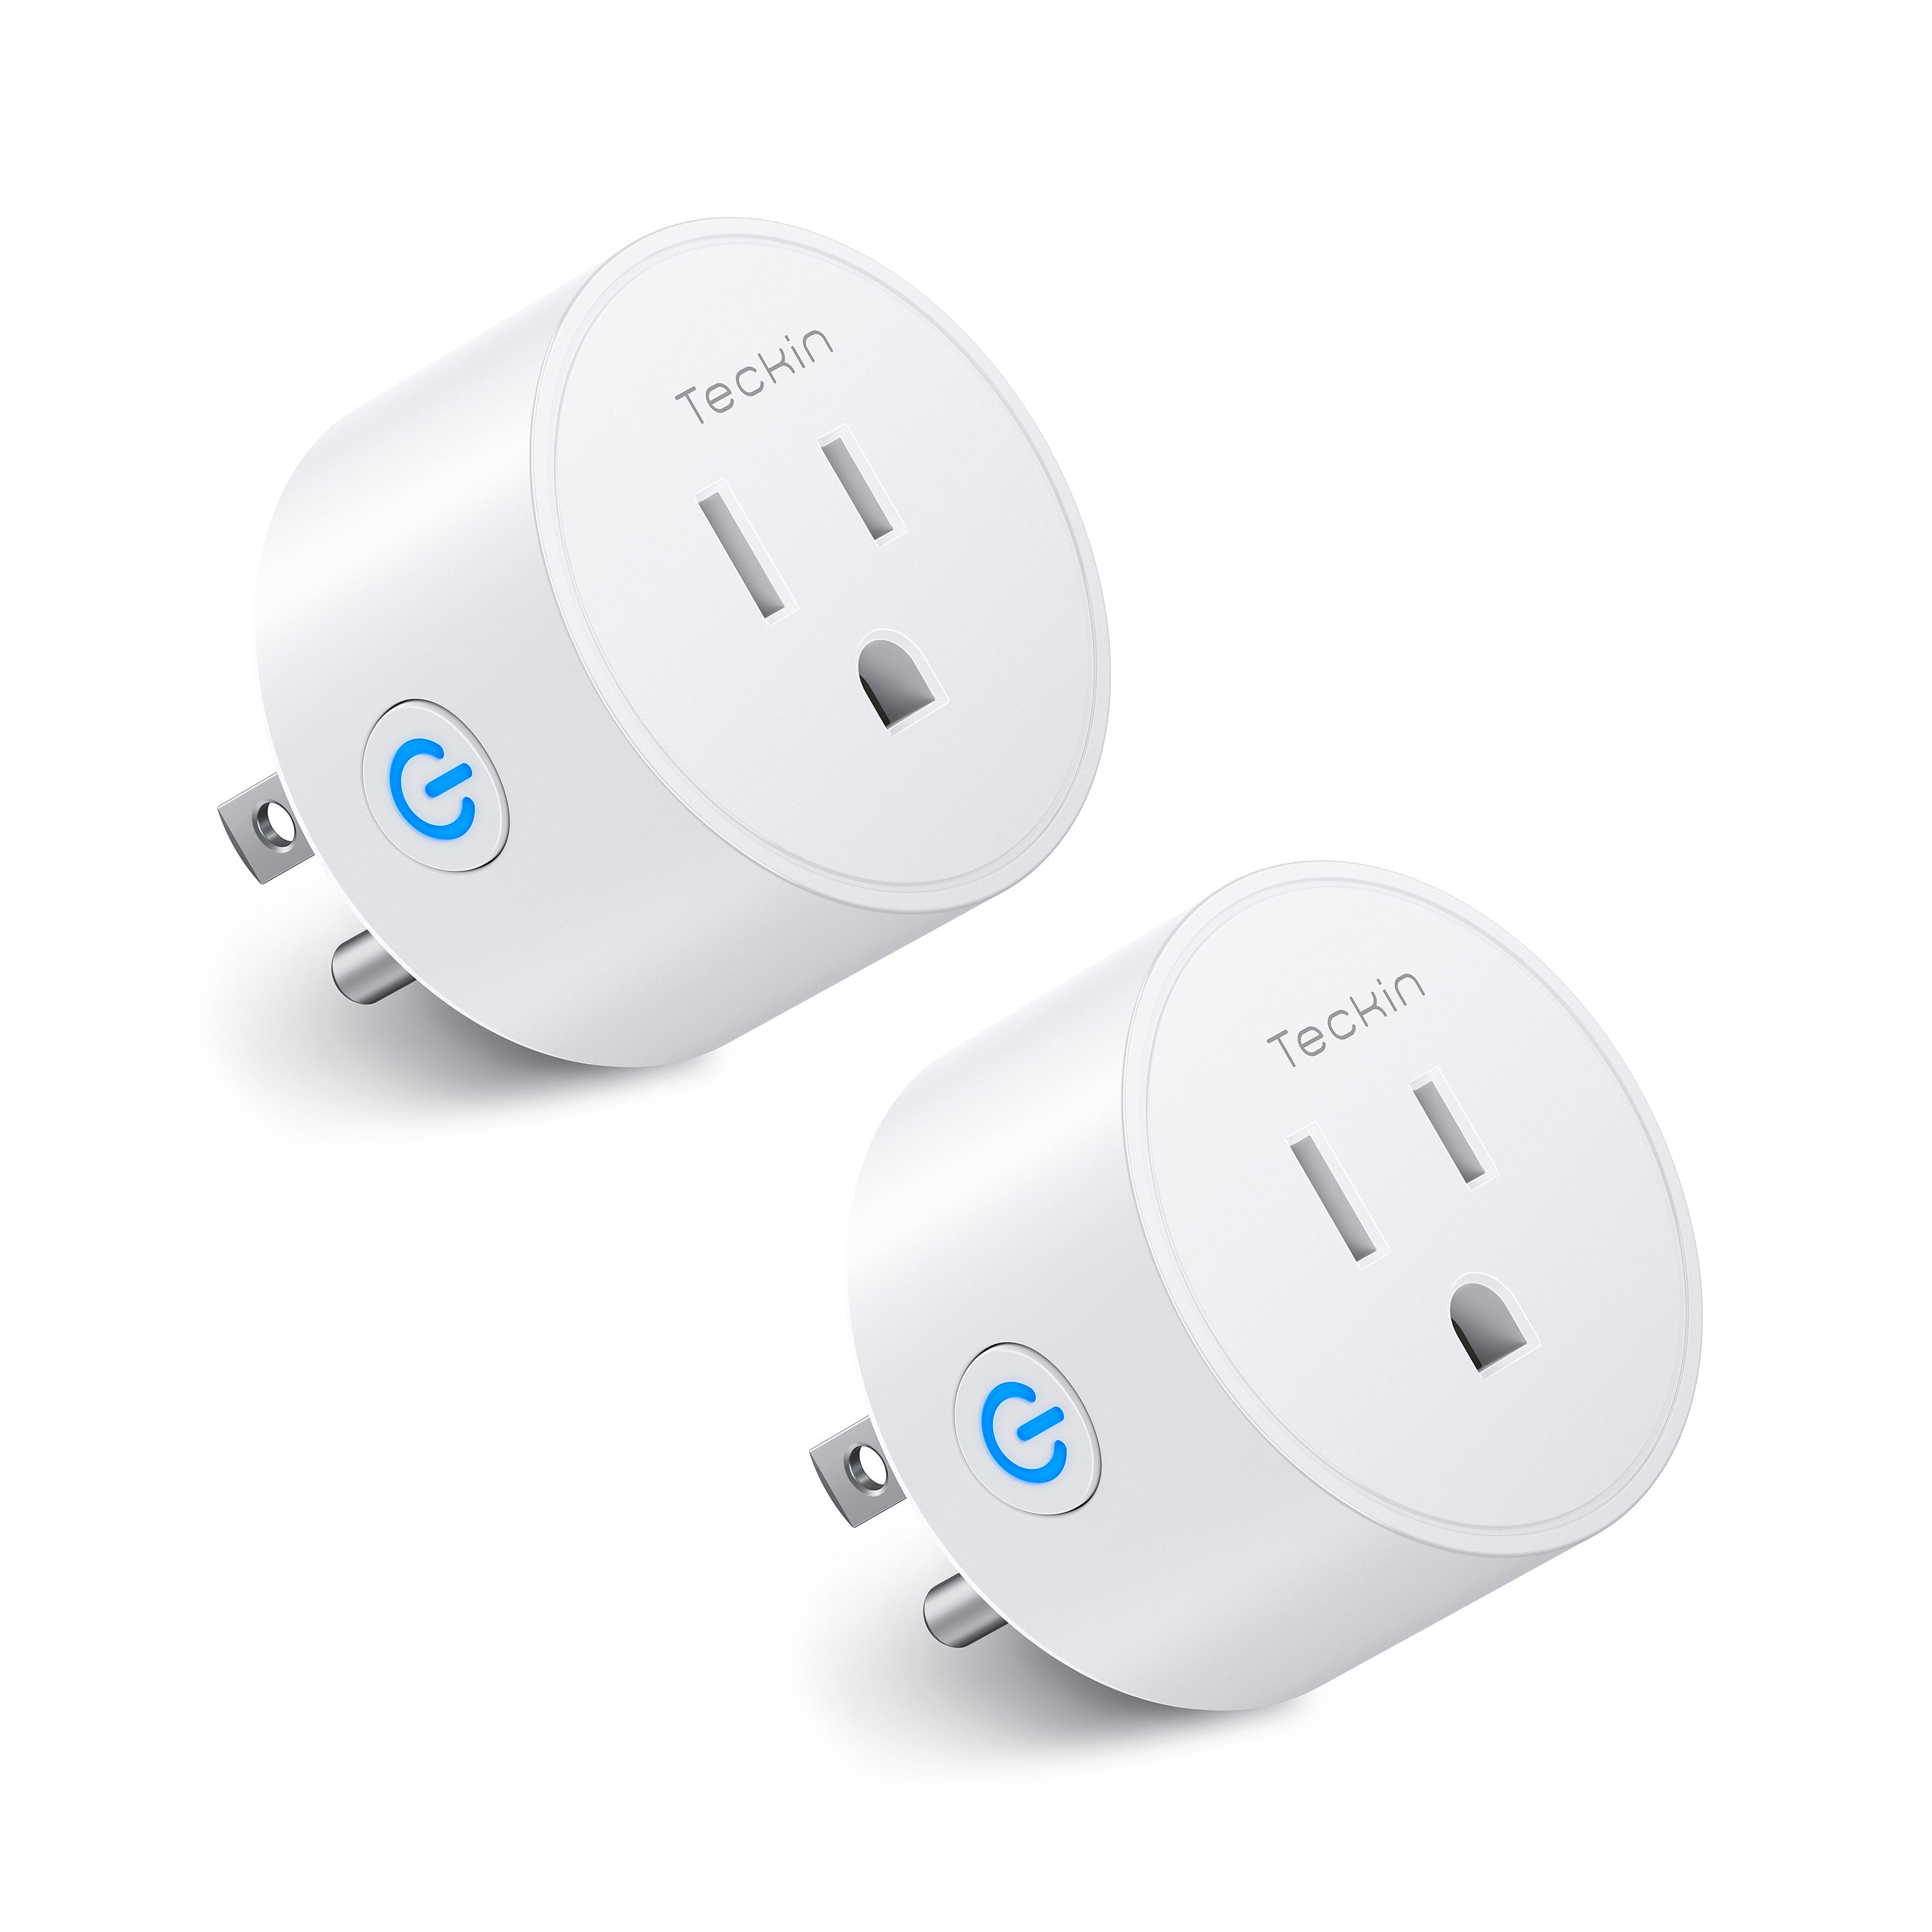 T TECKIN SP10-4 Smart Outlet Plug for sale online